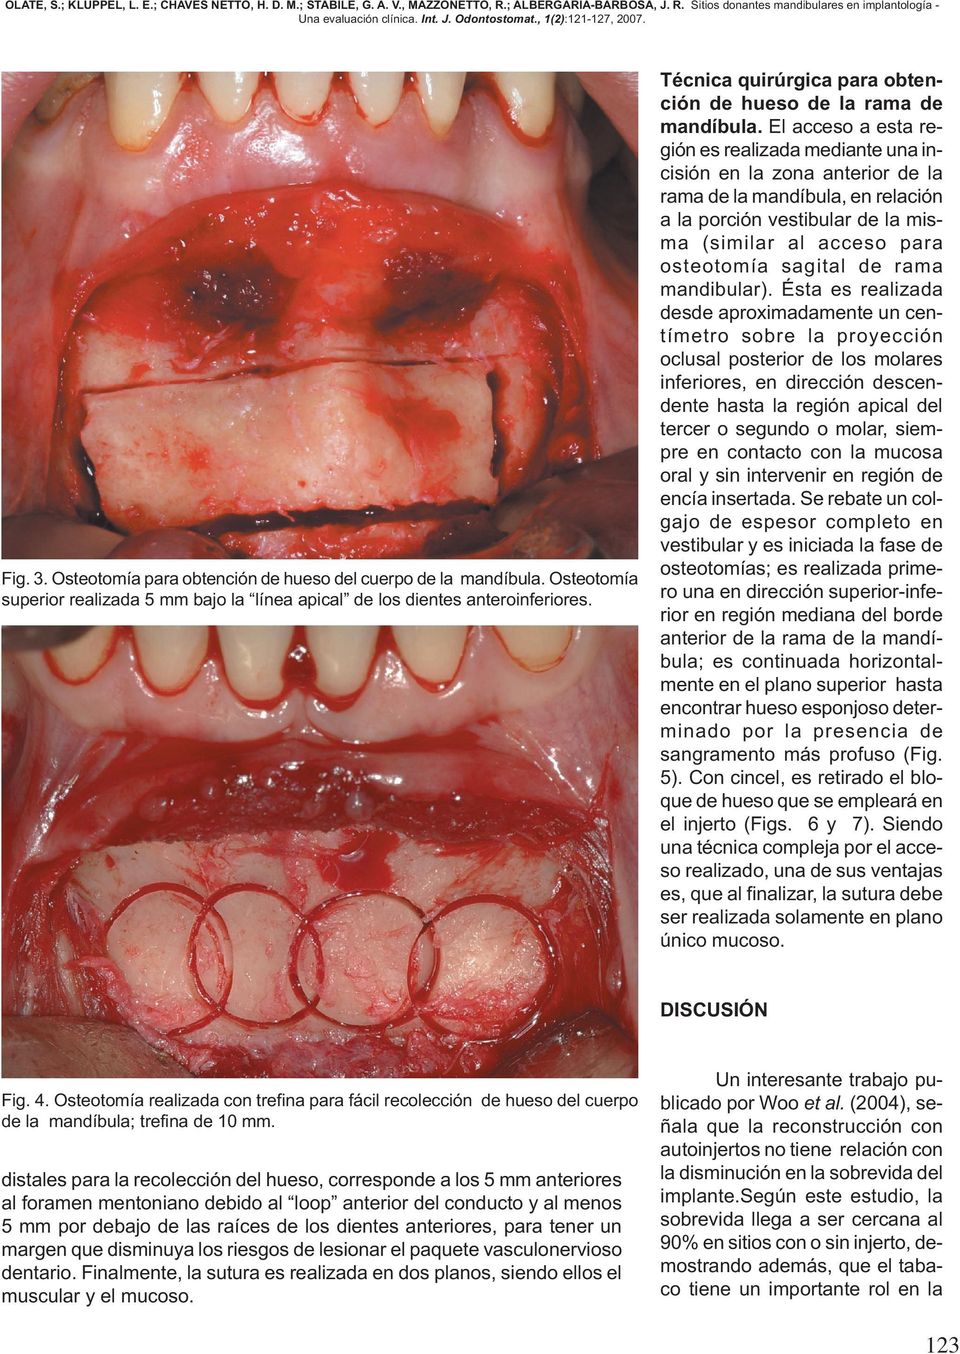 El acceso a esta región es realizada mediante una incisión en la zona anterior de la rama de la mandíbula, en relación a la porción vestibular de la misma (similar al acceso para osteotomía sagital